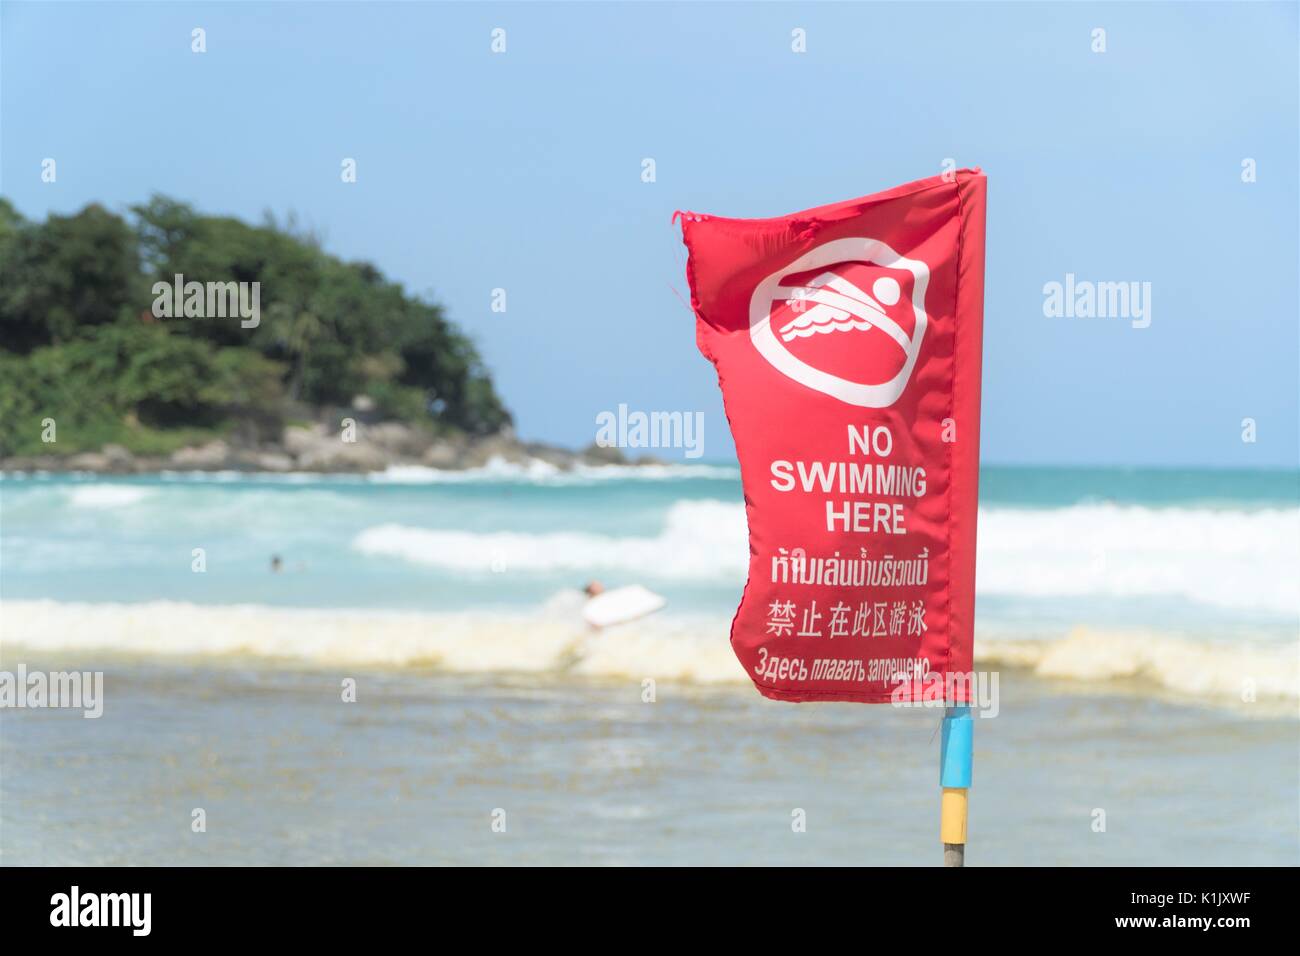 Pas de piscine ici s'inscrire zone dangereuse de la plage drapeau rouge en anglais et le texte thaï Banque D'Images